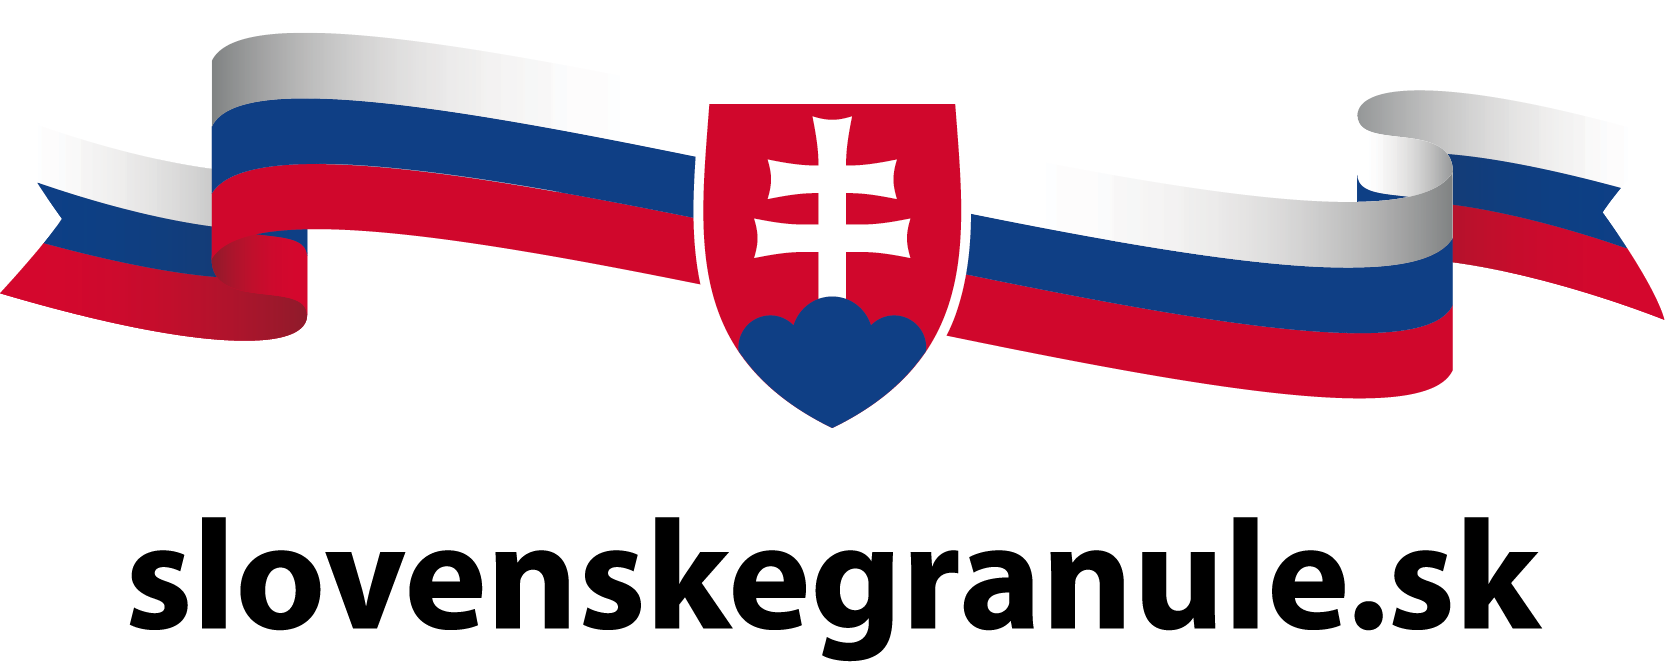 web stranky - slovenskegranule